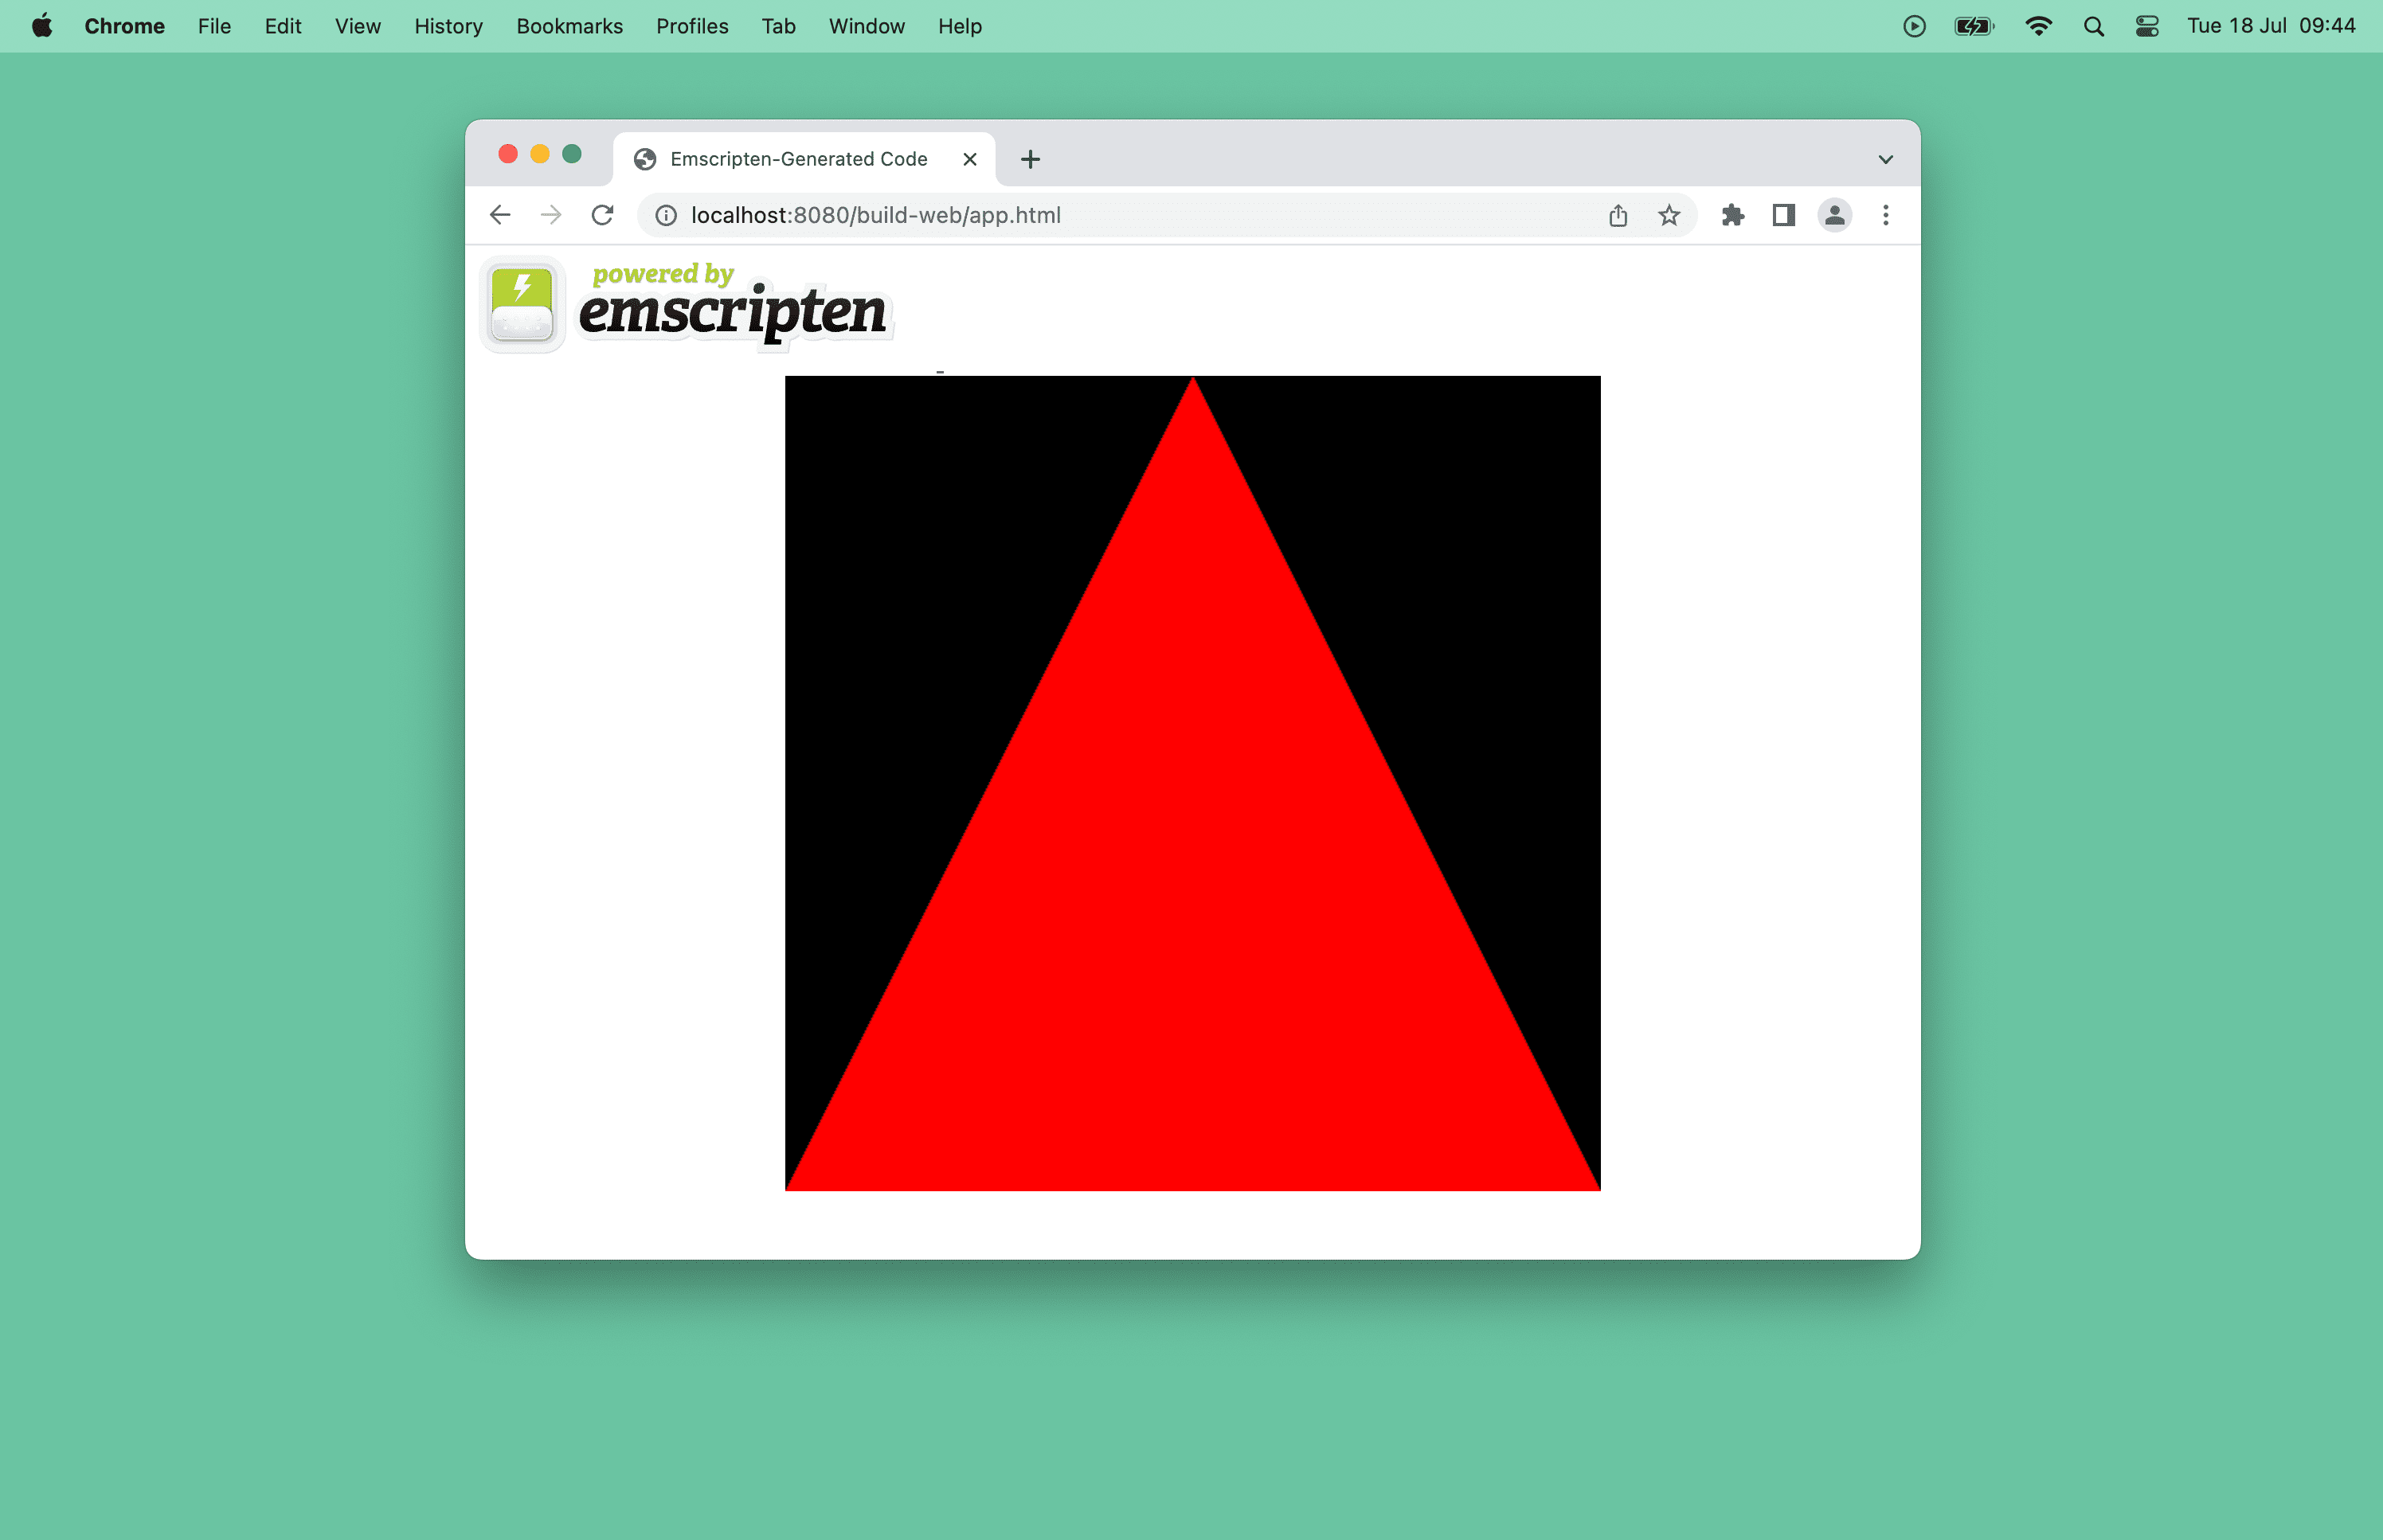 Zrzut ekranu z czerwonym trójkątem w oknie przeglądarki.